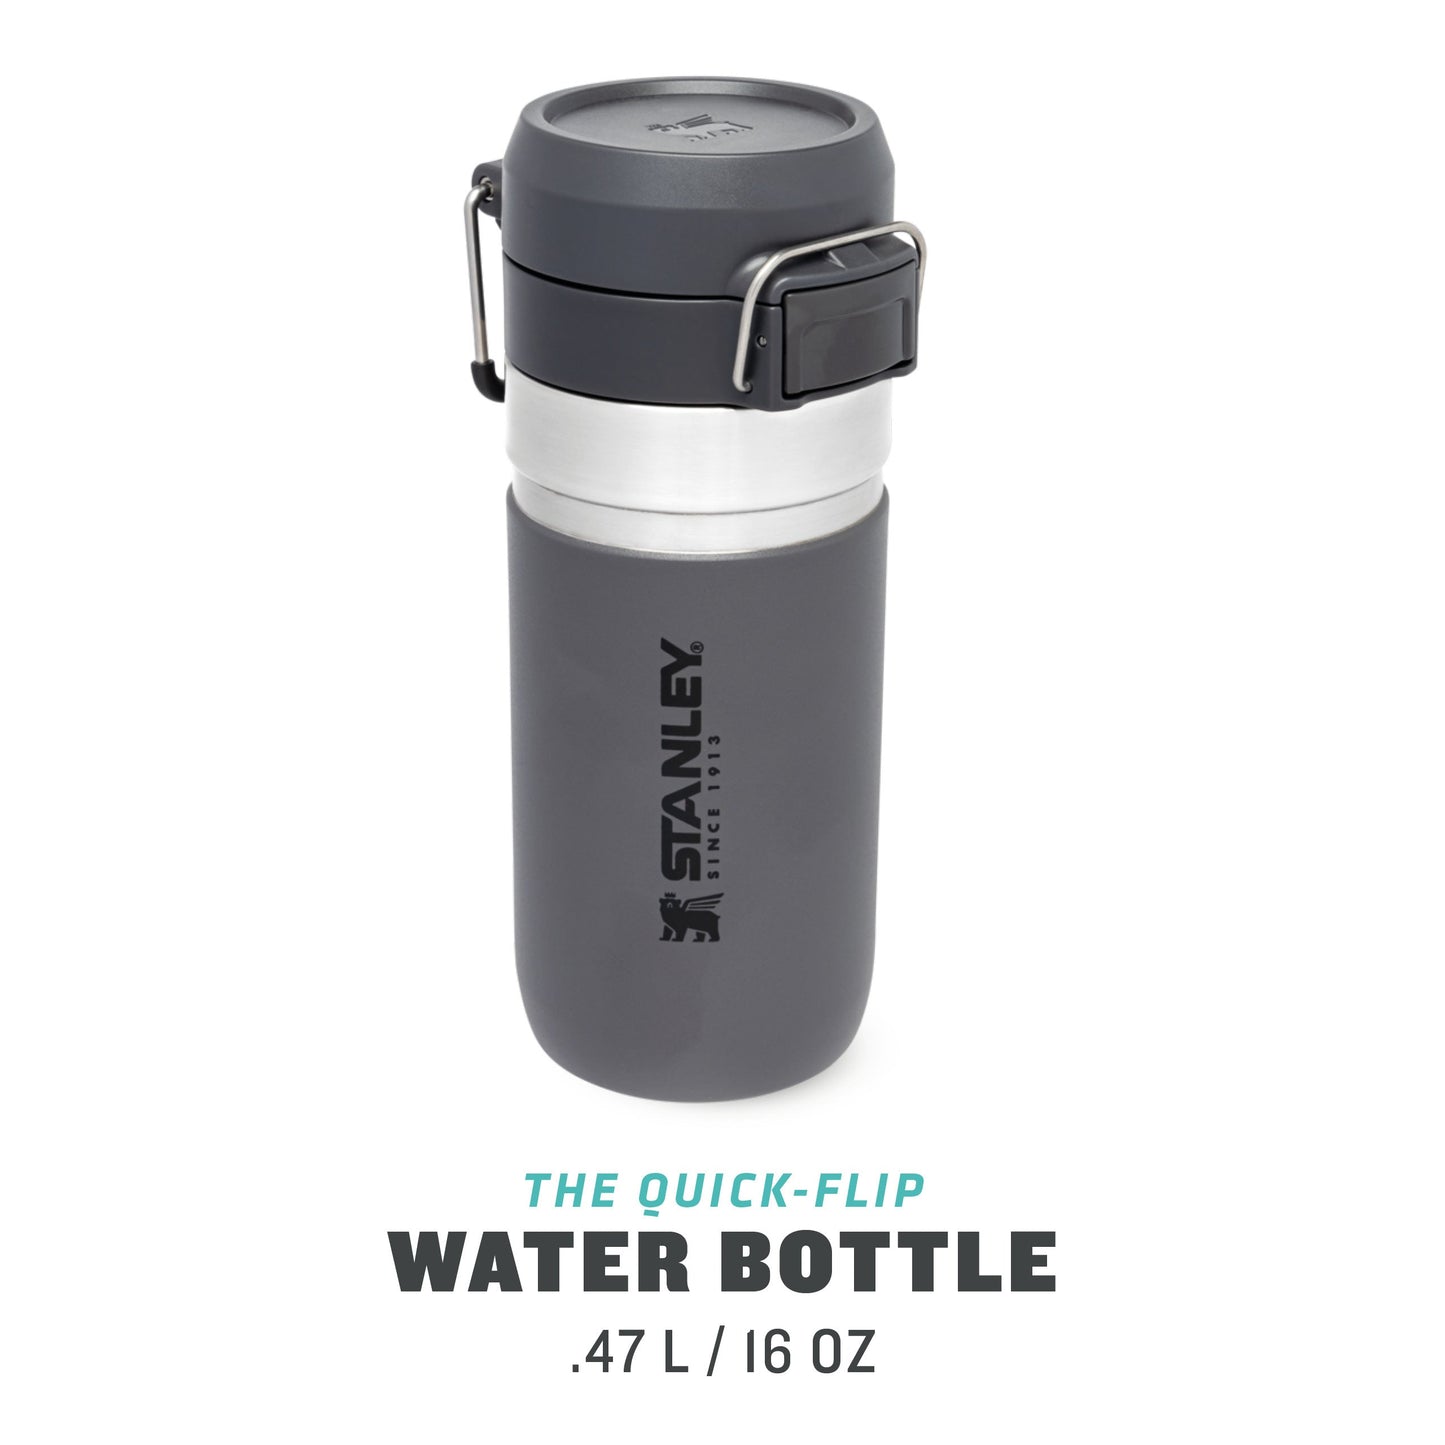 Go Quick Flip Water Bottle | 0.47L